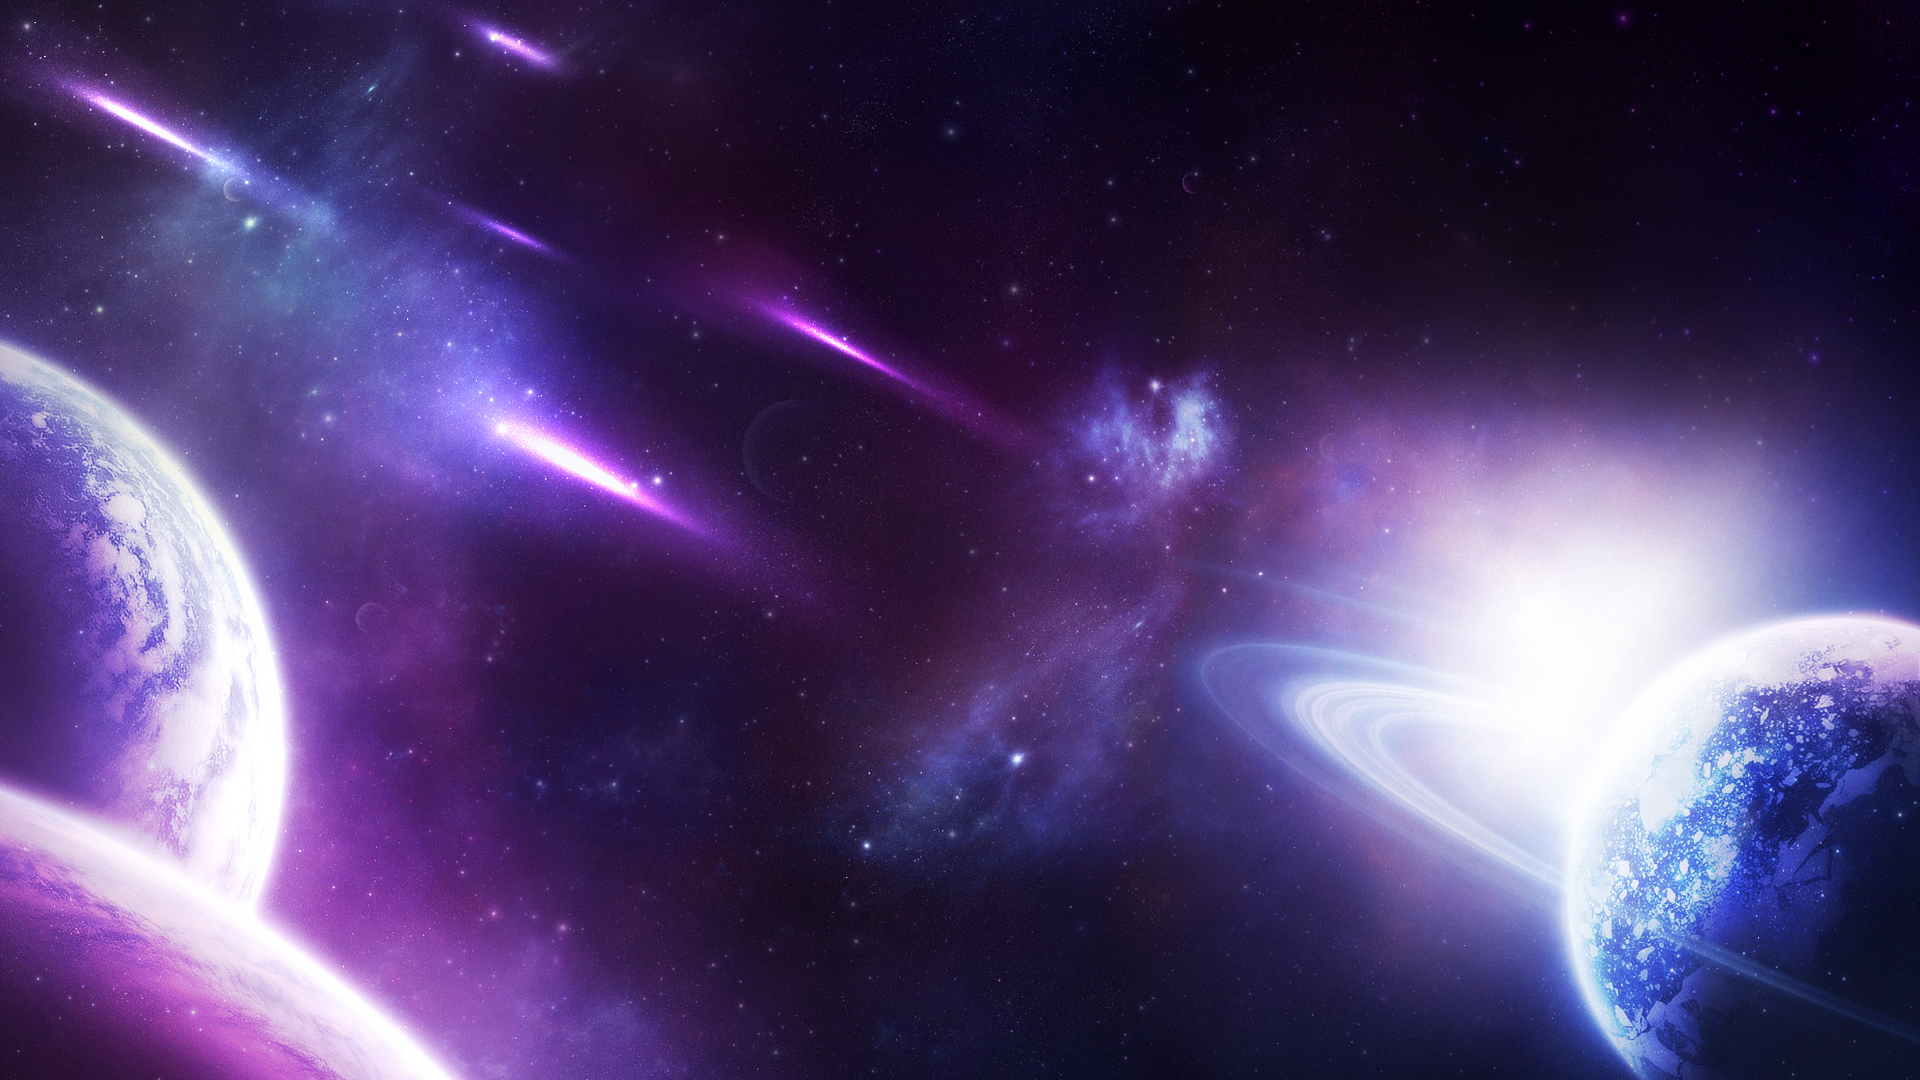 Hình nền thiên hà tím (Purple Galaxy wallpaper): Không gian tím huyền bí, đầy sức thu hút và đẹp mê hồn, chính là những gì mà bạn sẽ cảm nhận được khi sử dụng hình nền thiên hà tím. Hãy cùng trải nghiệm vẻ đẹp kỳ ảo của những vùng không gian sao đang chờ đón bạn.